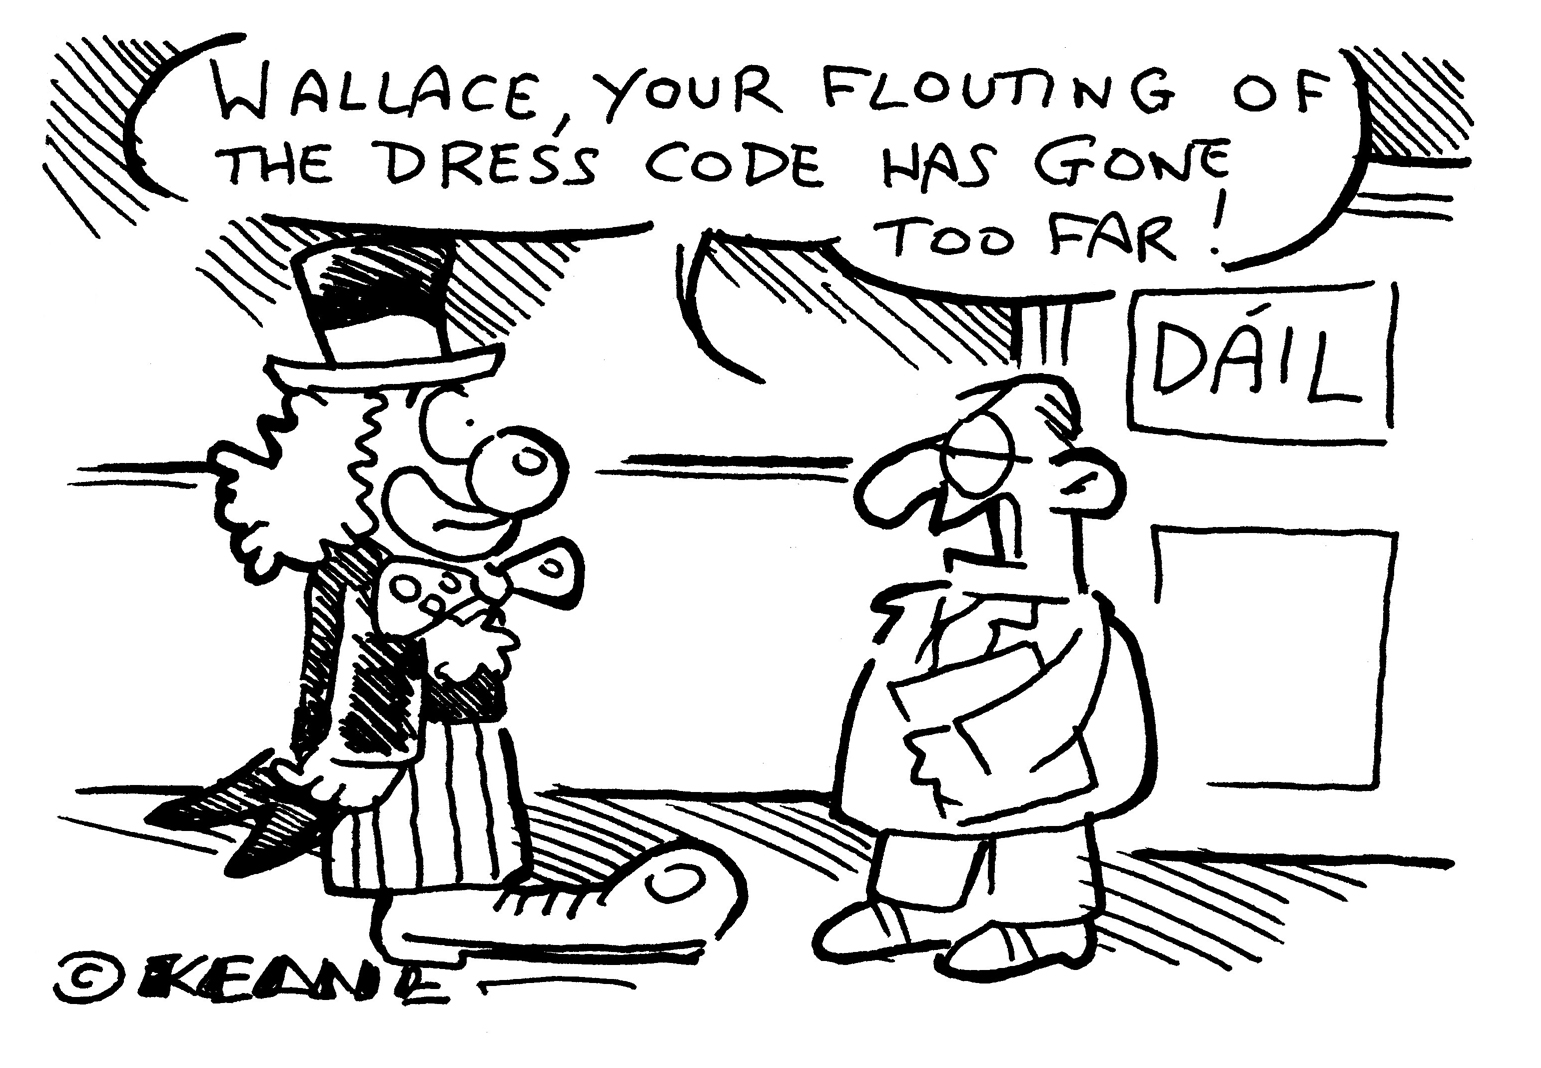 Keane - wallace dress code